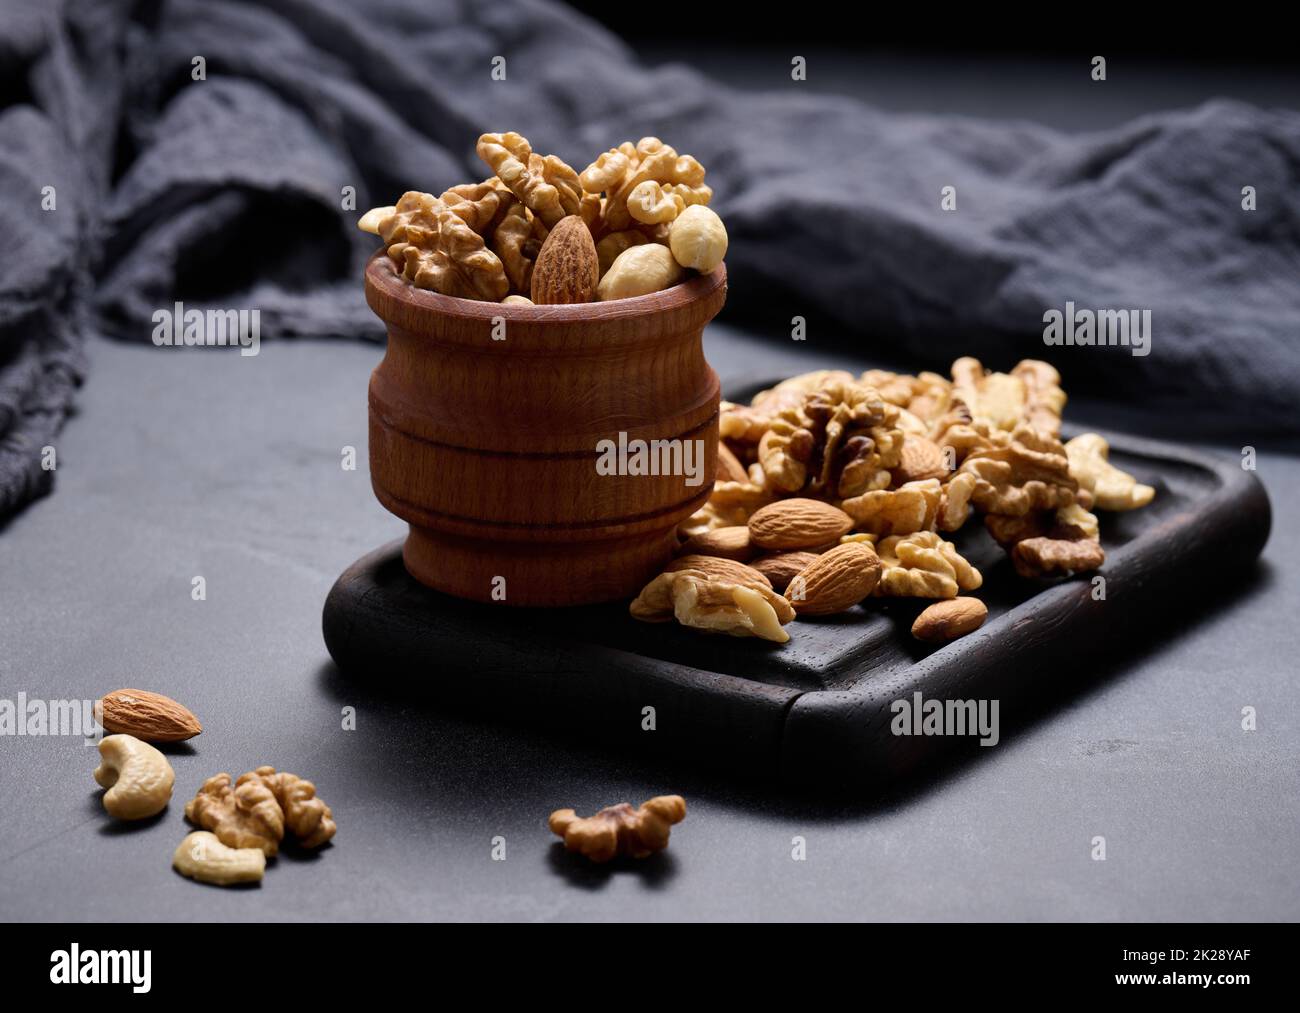 Walnuss, Mandel, Cashew auf einem Holzbrett. Köstlicher, nahrhafter Snack Stockfoto